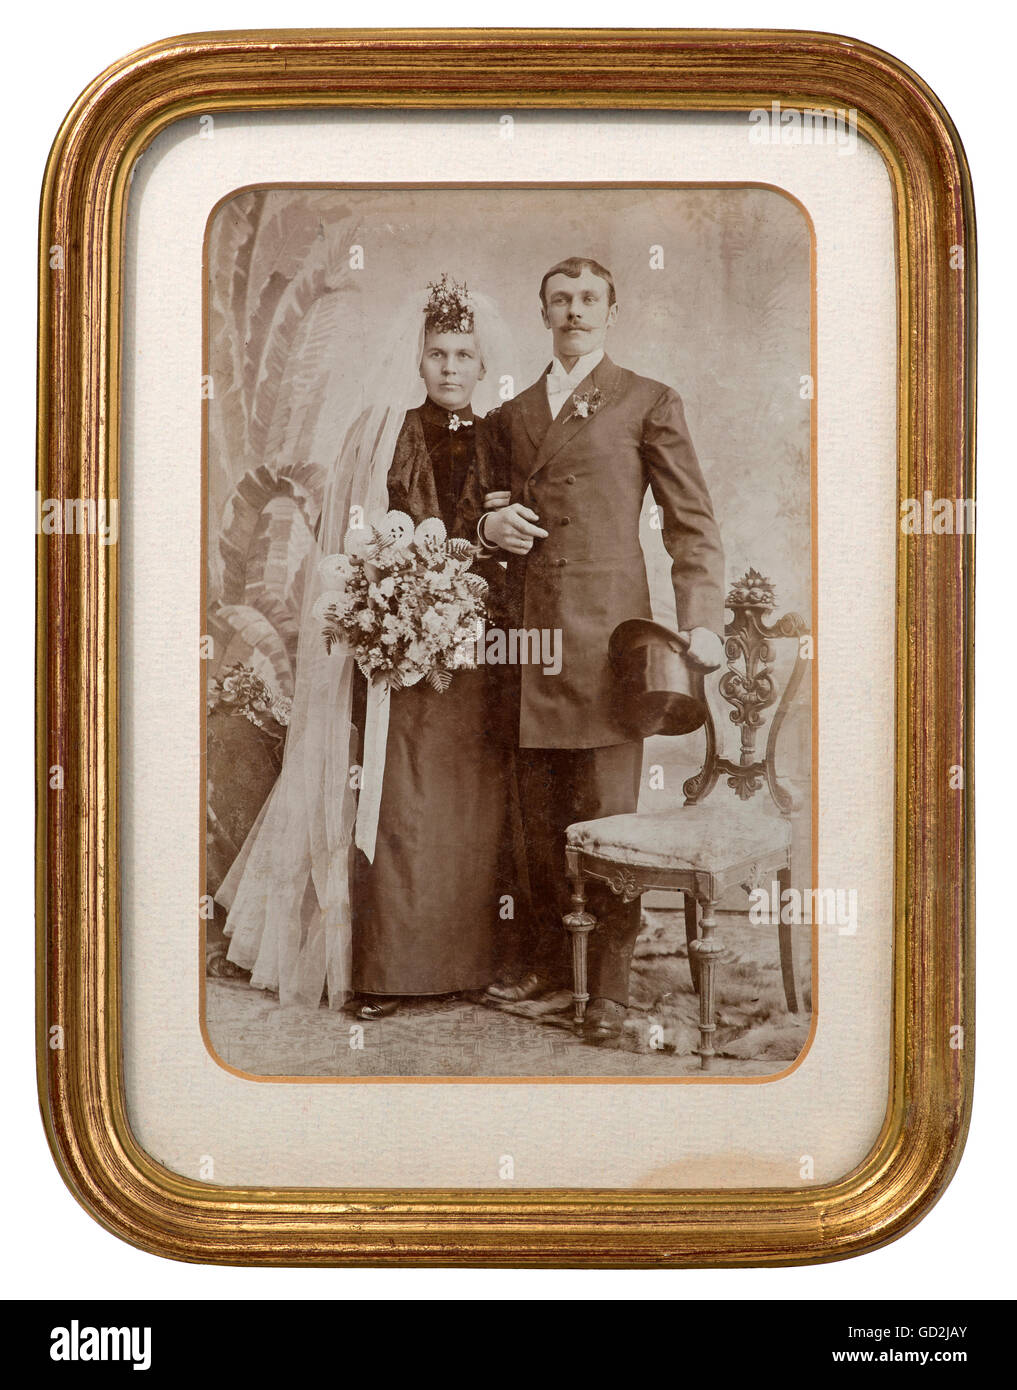 Personnes, couples, couple de mariage, photo de mariage dans le cadre doré, Allemagne, vers 1890, droits supplémentaires-Clearences-non disponible Banque D'Images